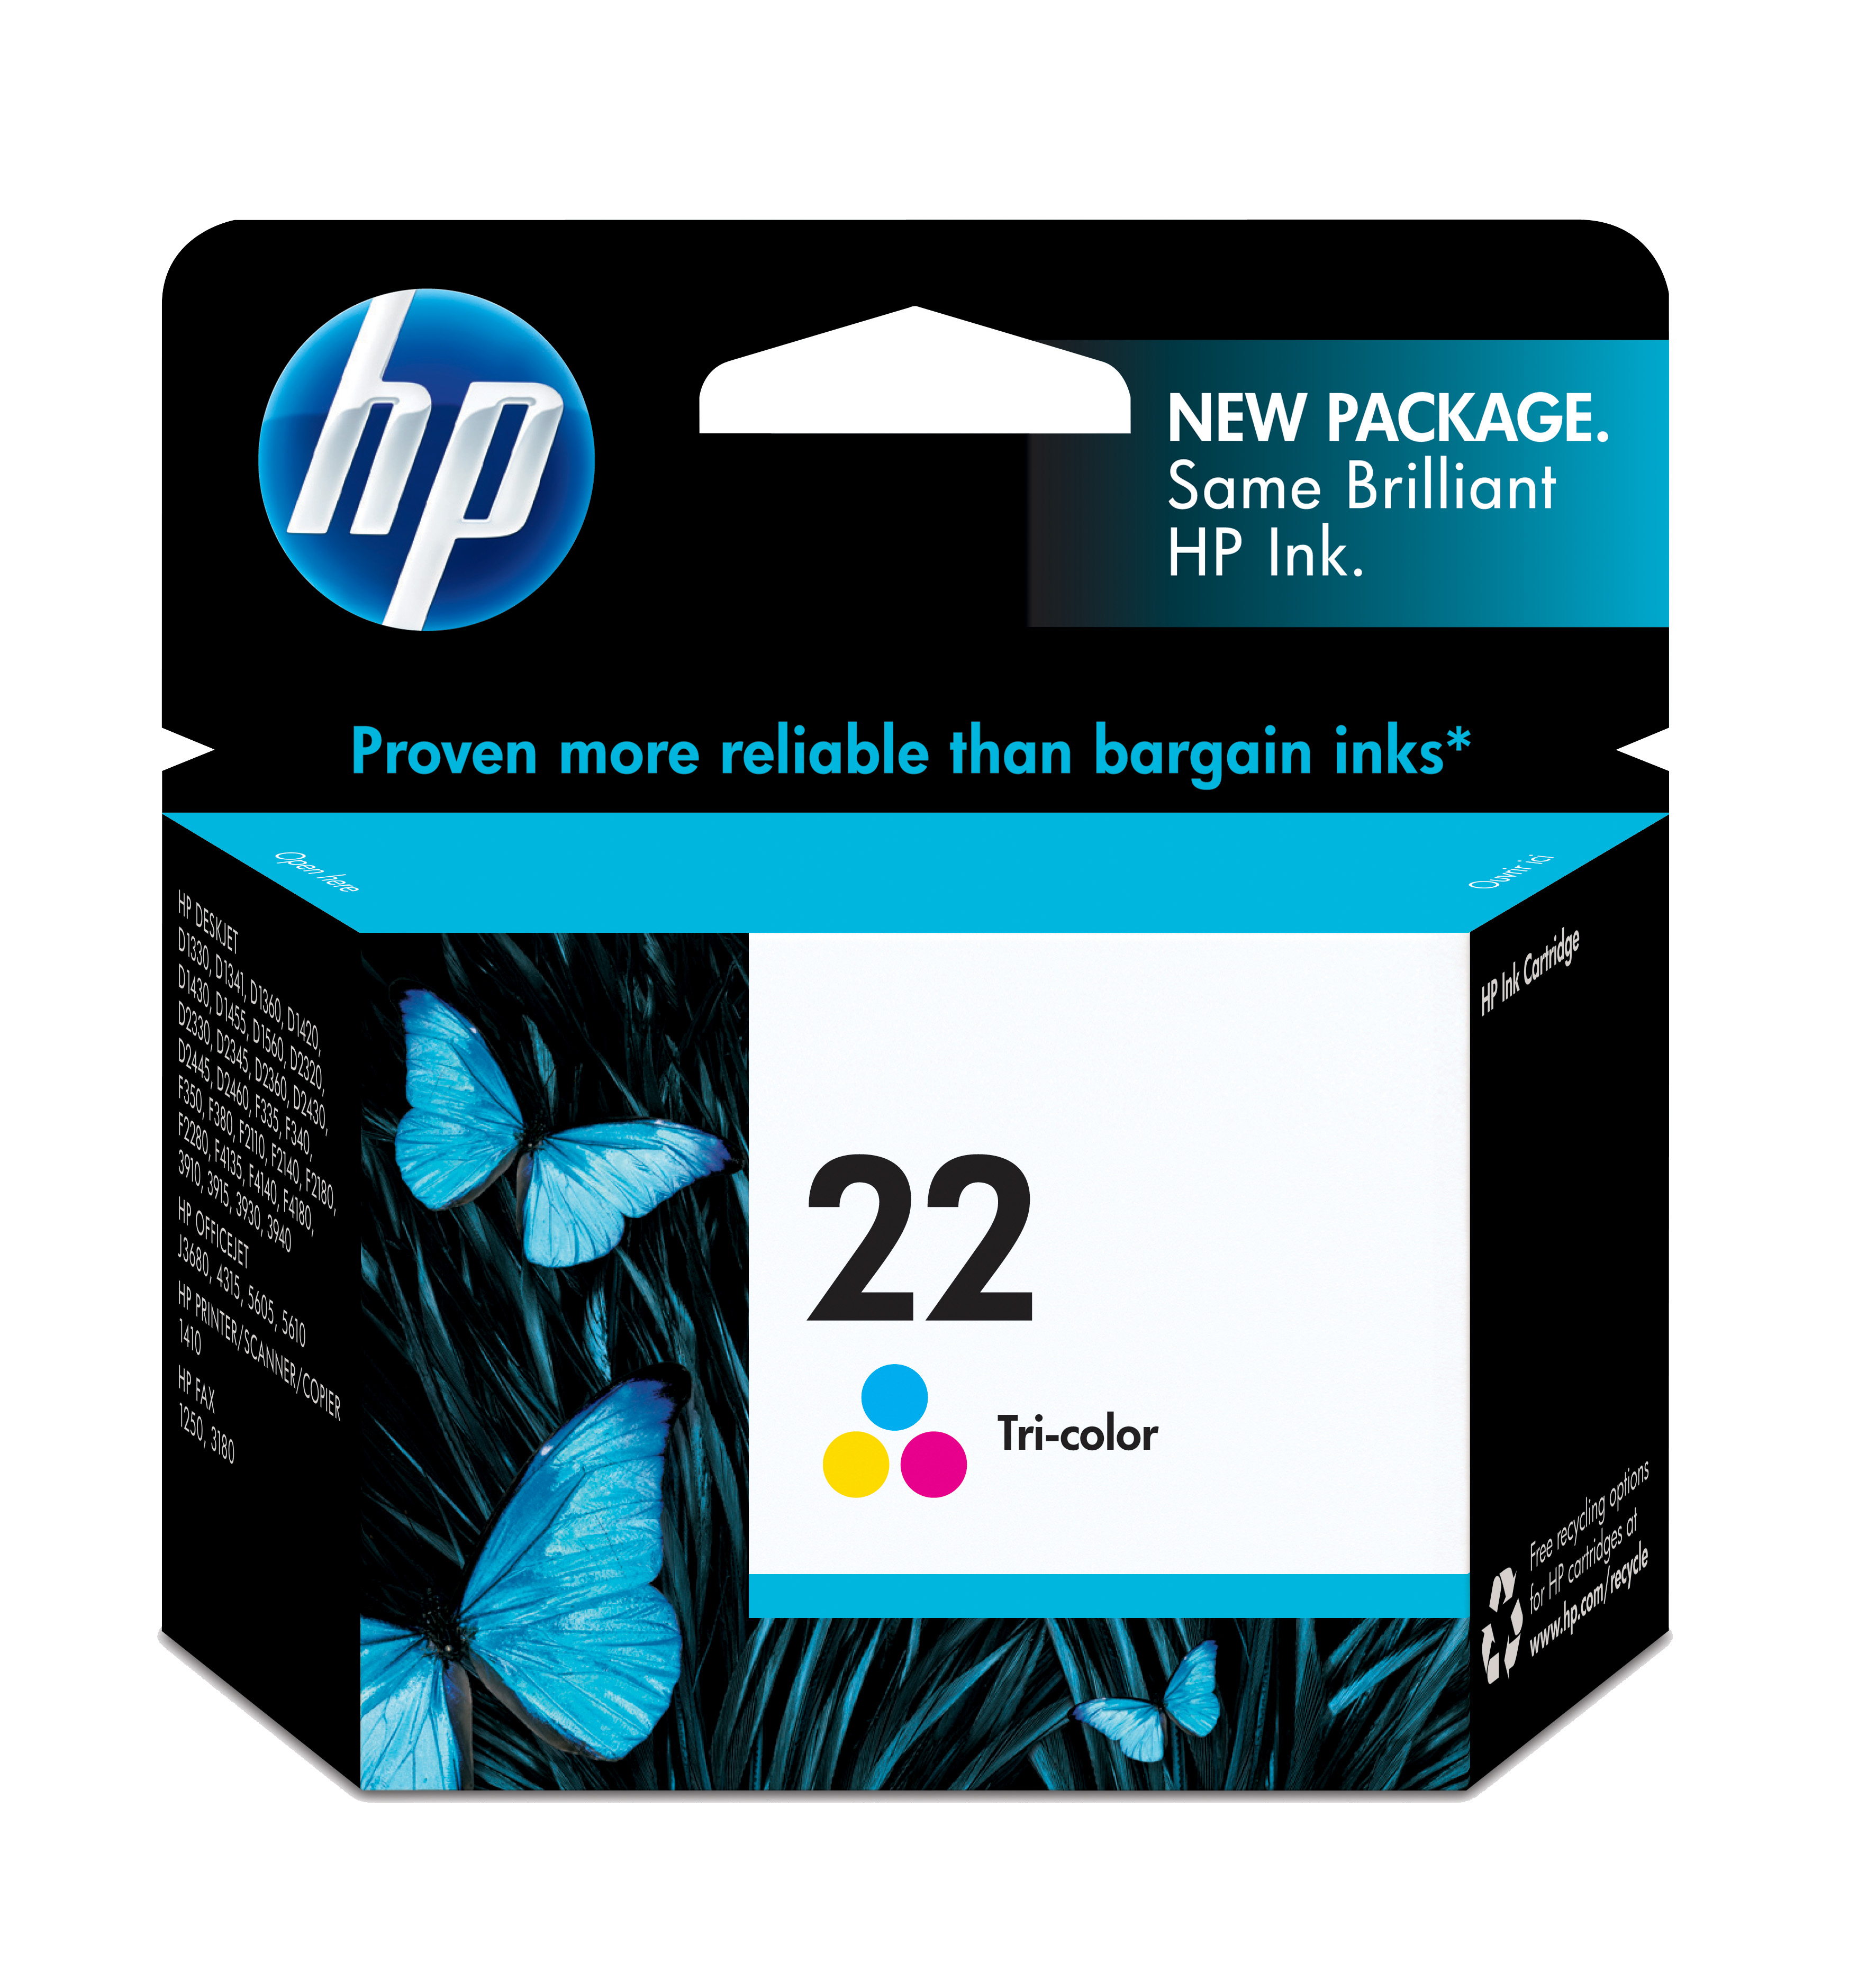 HP 22 Tri-color Inkjet Print Cartridge Genuine HP Inkjet